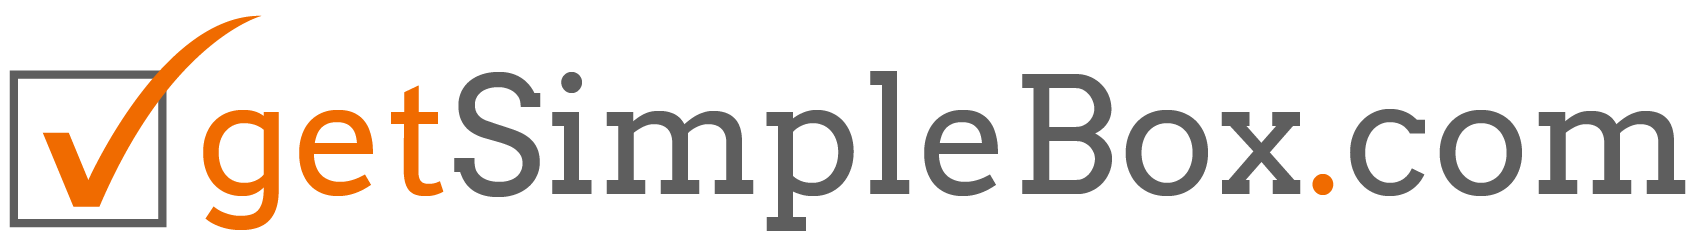 Simple Box.com Logo